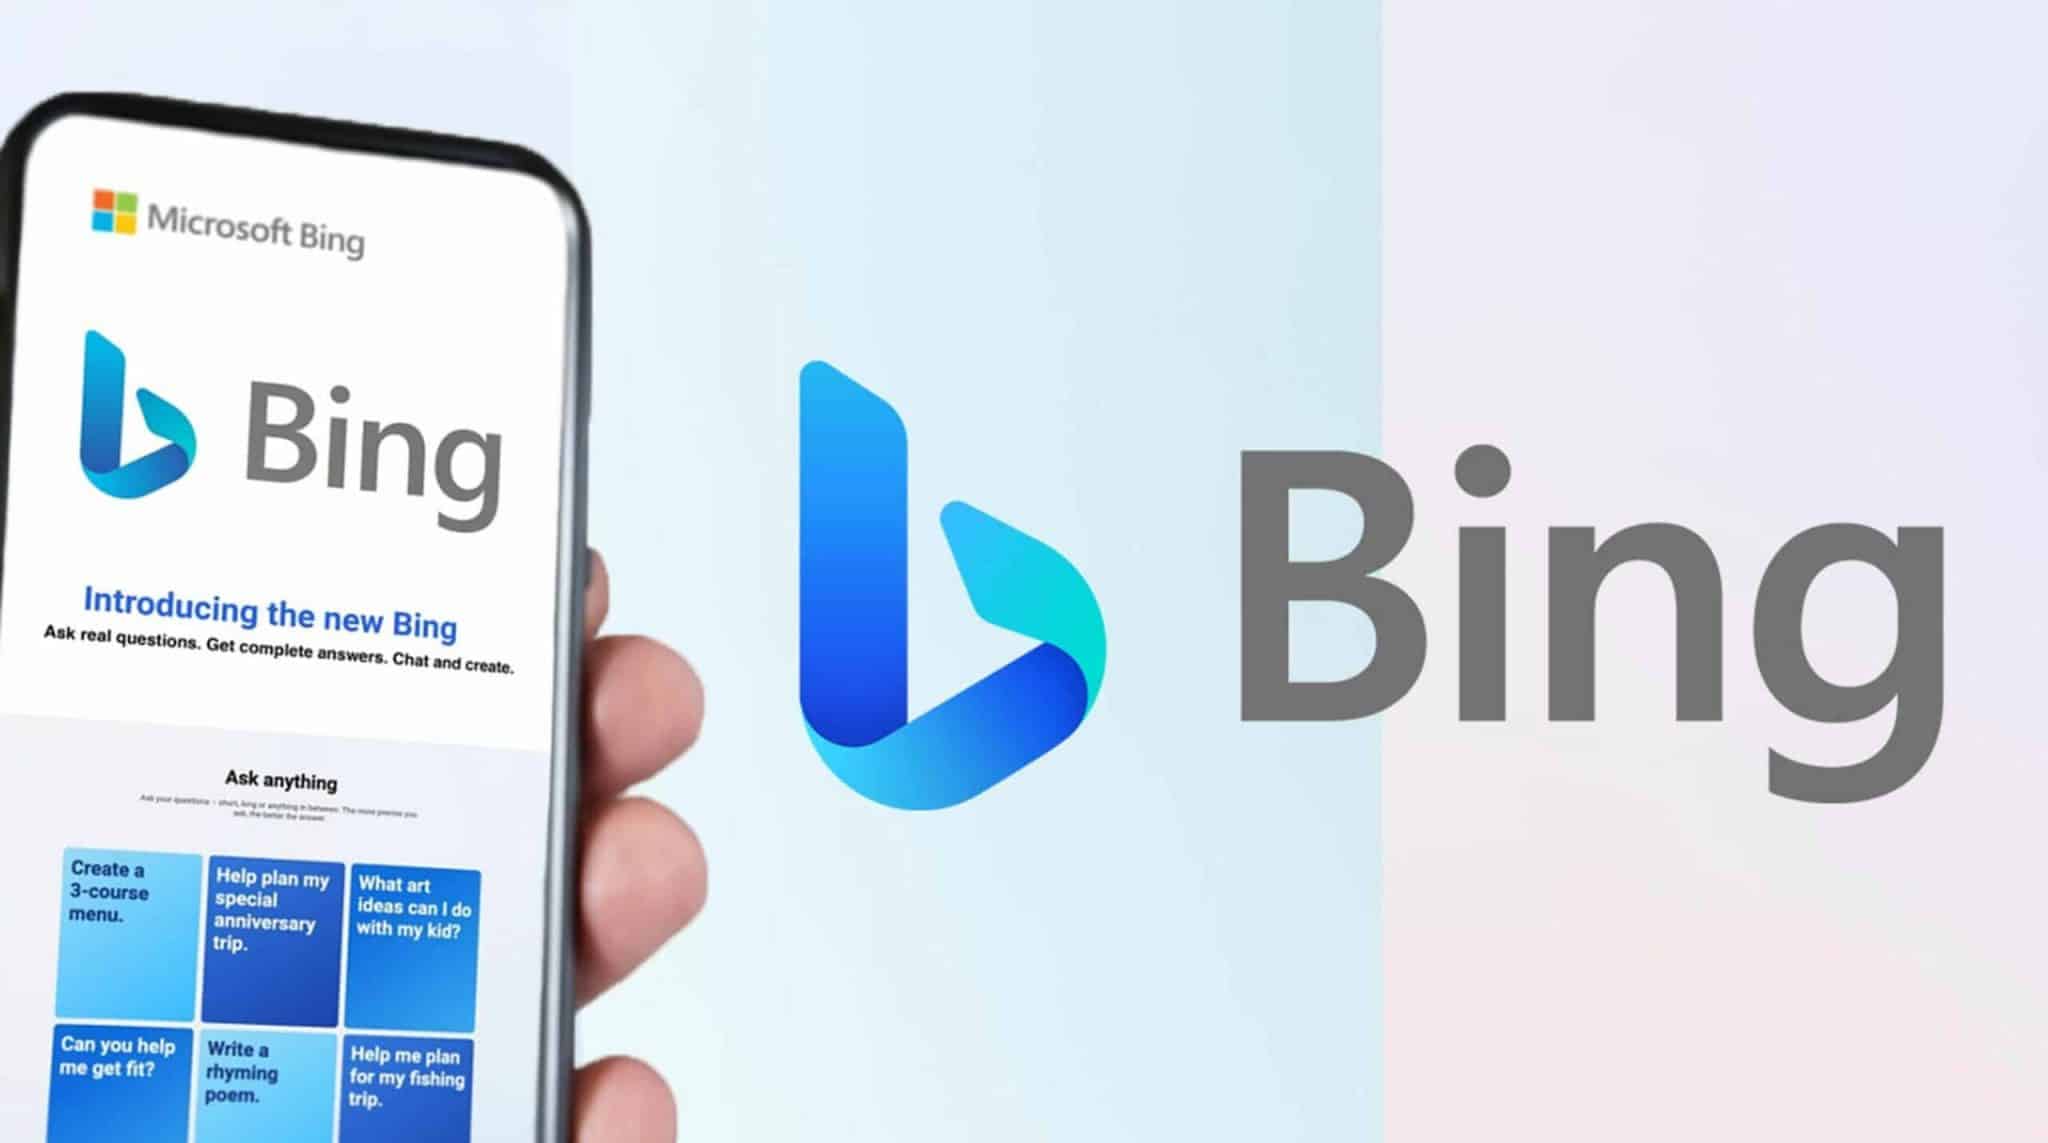 Samsung Bing